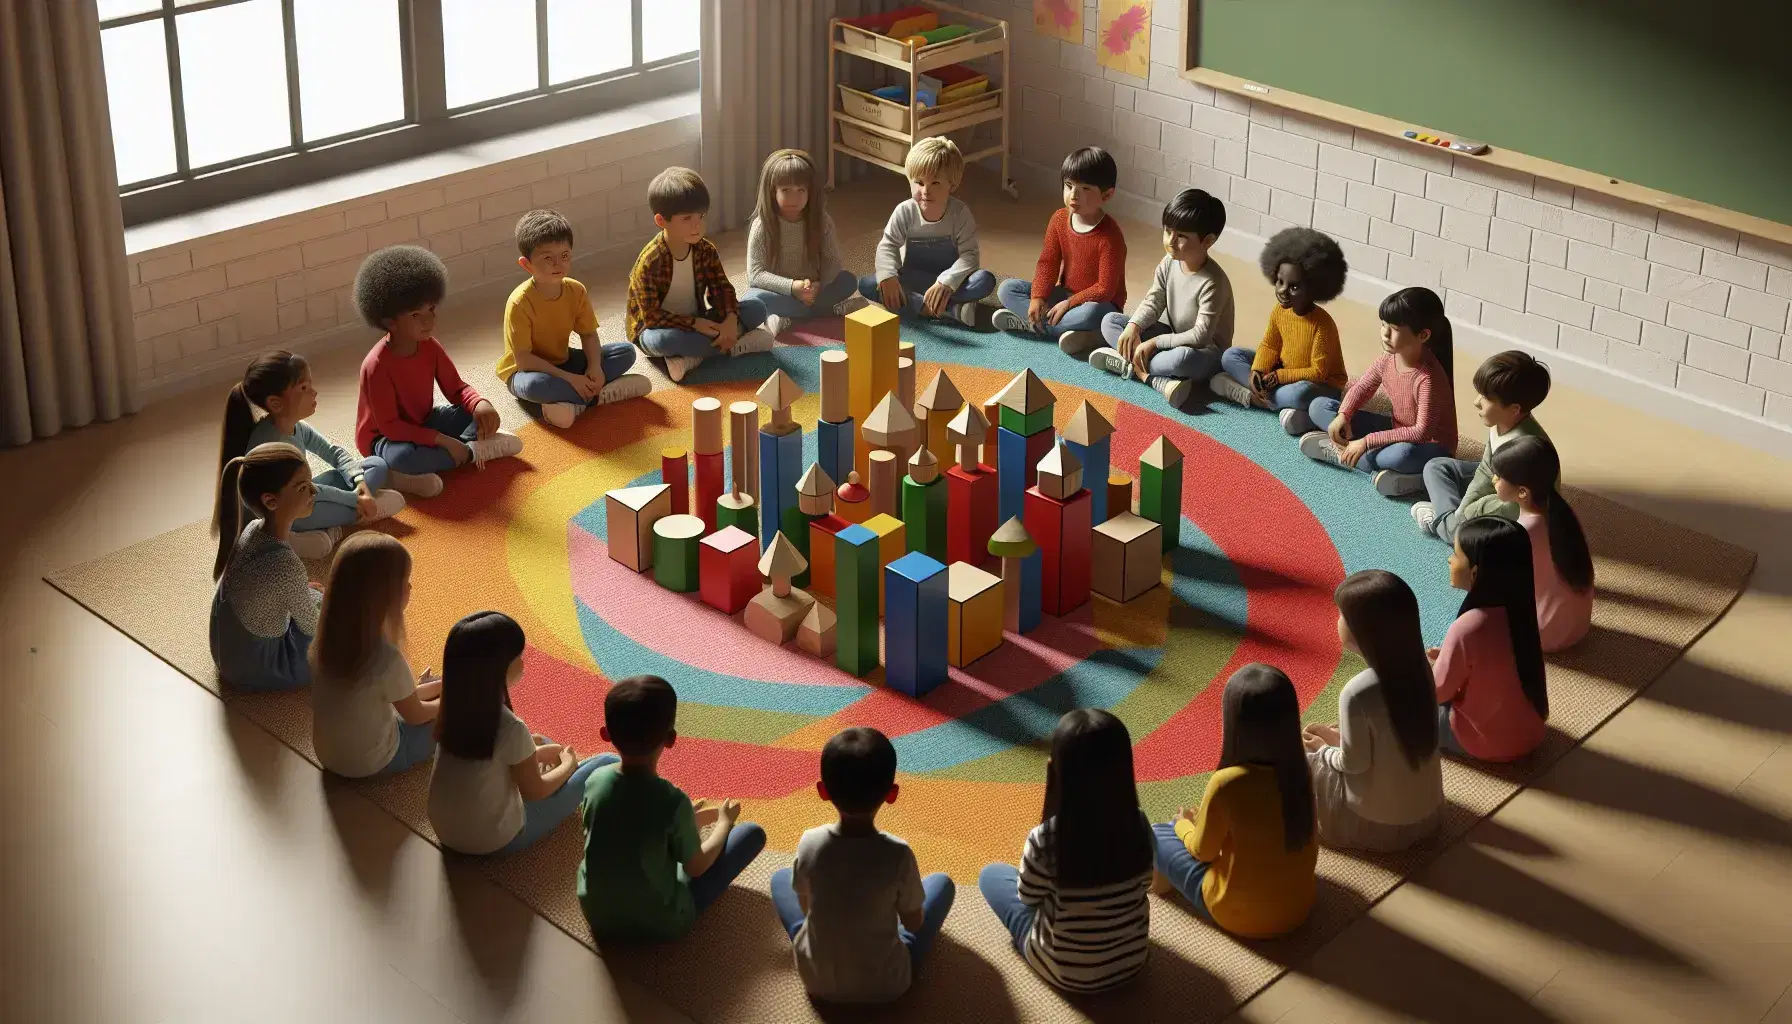 Niños de diversas edades y etnias sentados en círculo en una alfombra colorida, jugando con bloques geométricos de madera en un aula iluminada naturalmente.